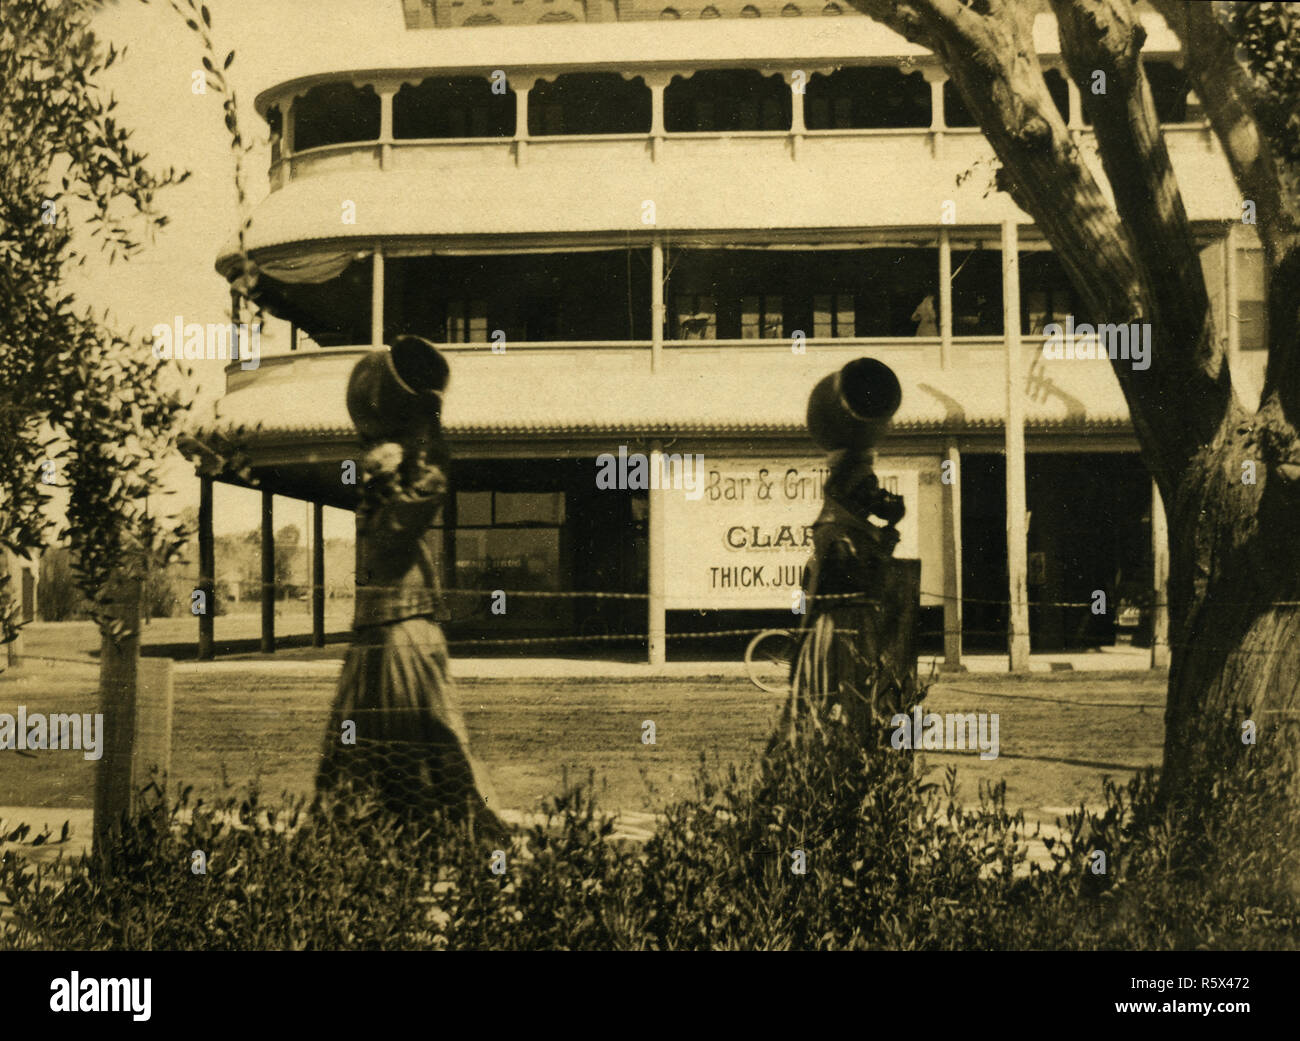 Les femmes autochtones avec Ollas en face de l'hôtel Adams original, Phoenix, Arizona Territoire ca 1900 Banque D'Images